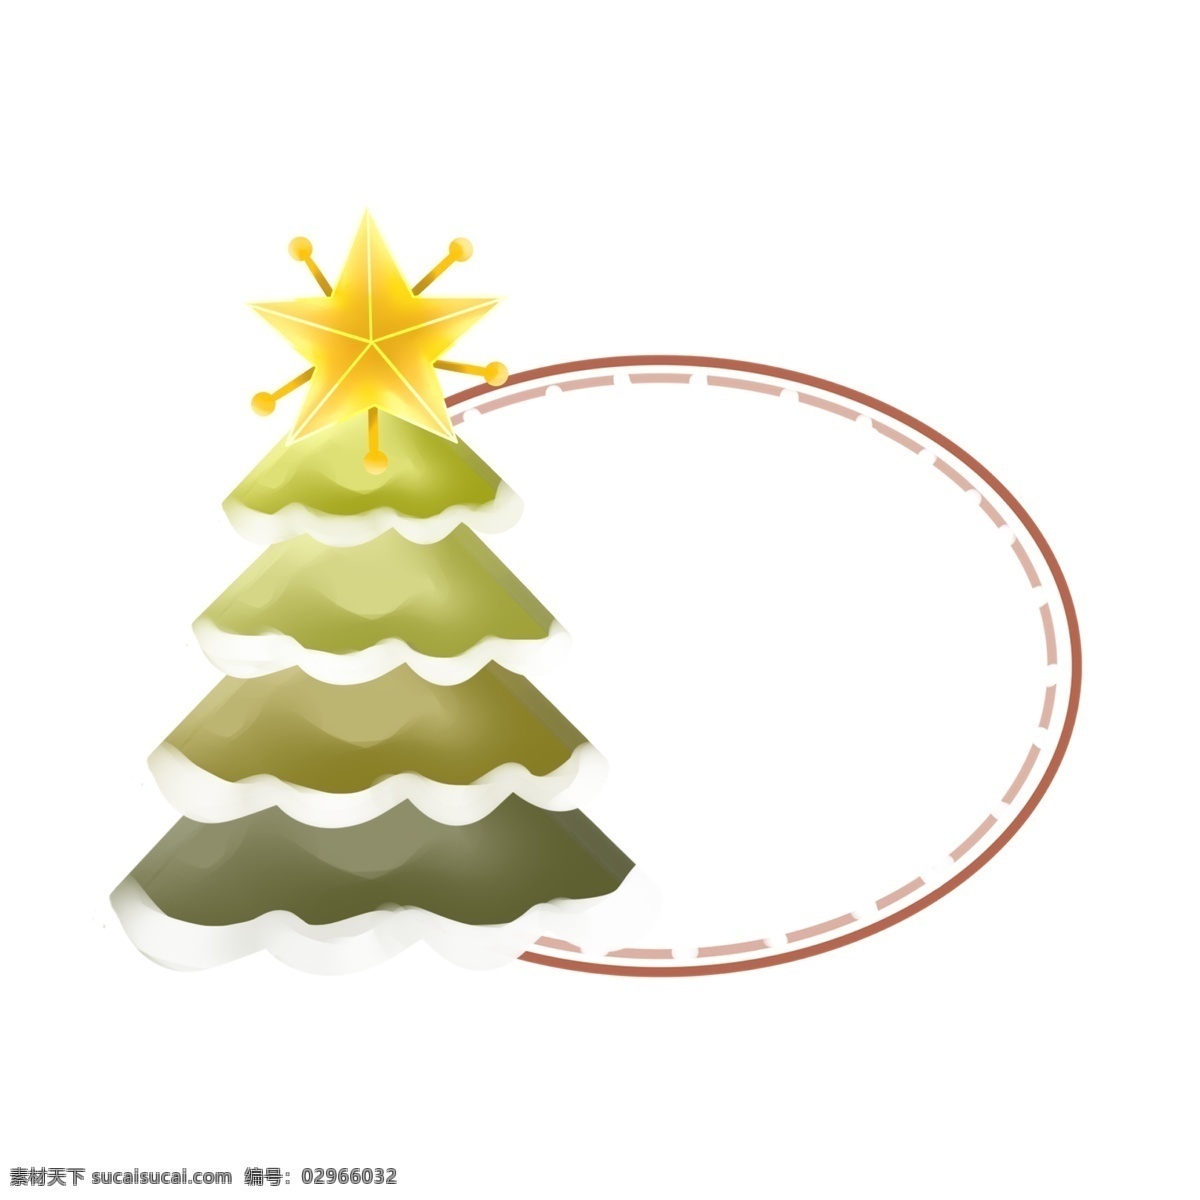 手绘 圣诞节 松树 边框 欢快的圣诞节 圣诞节边框 圣诞节松树 愉快的圣诞节 创意